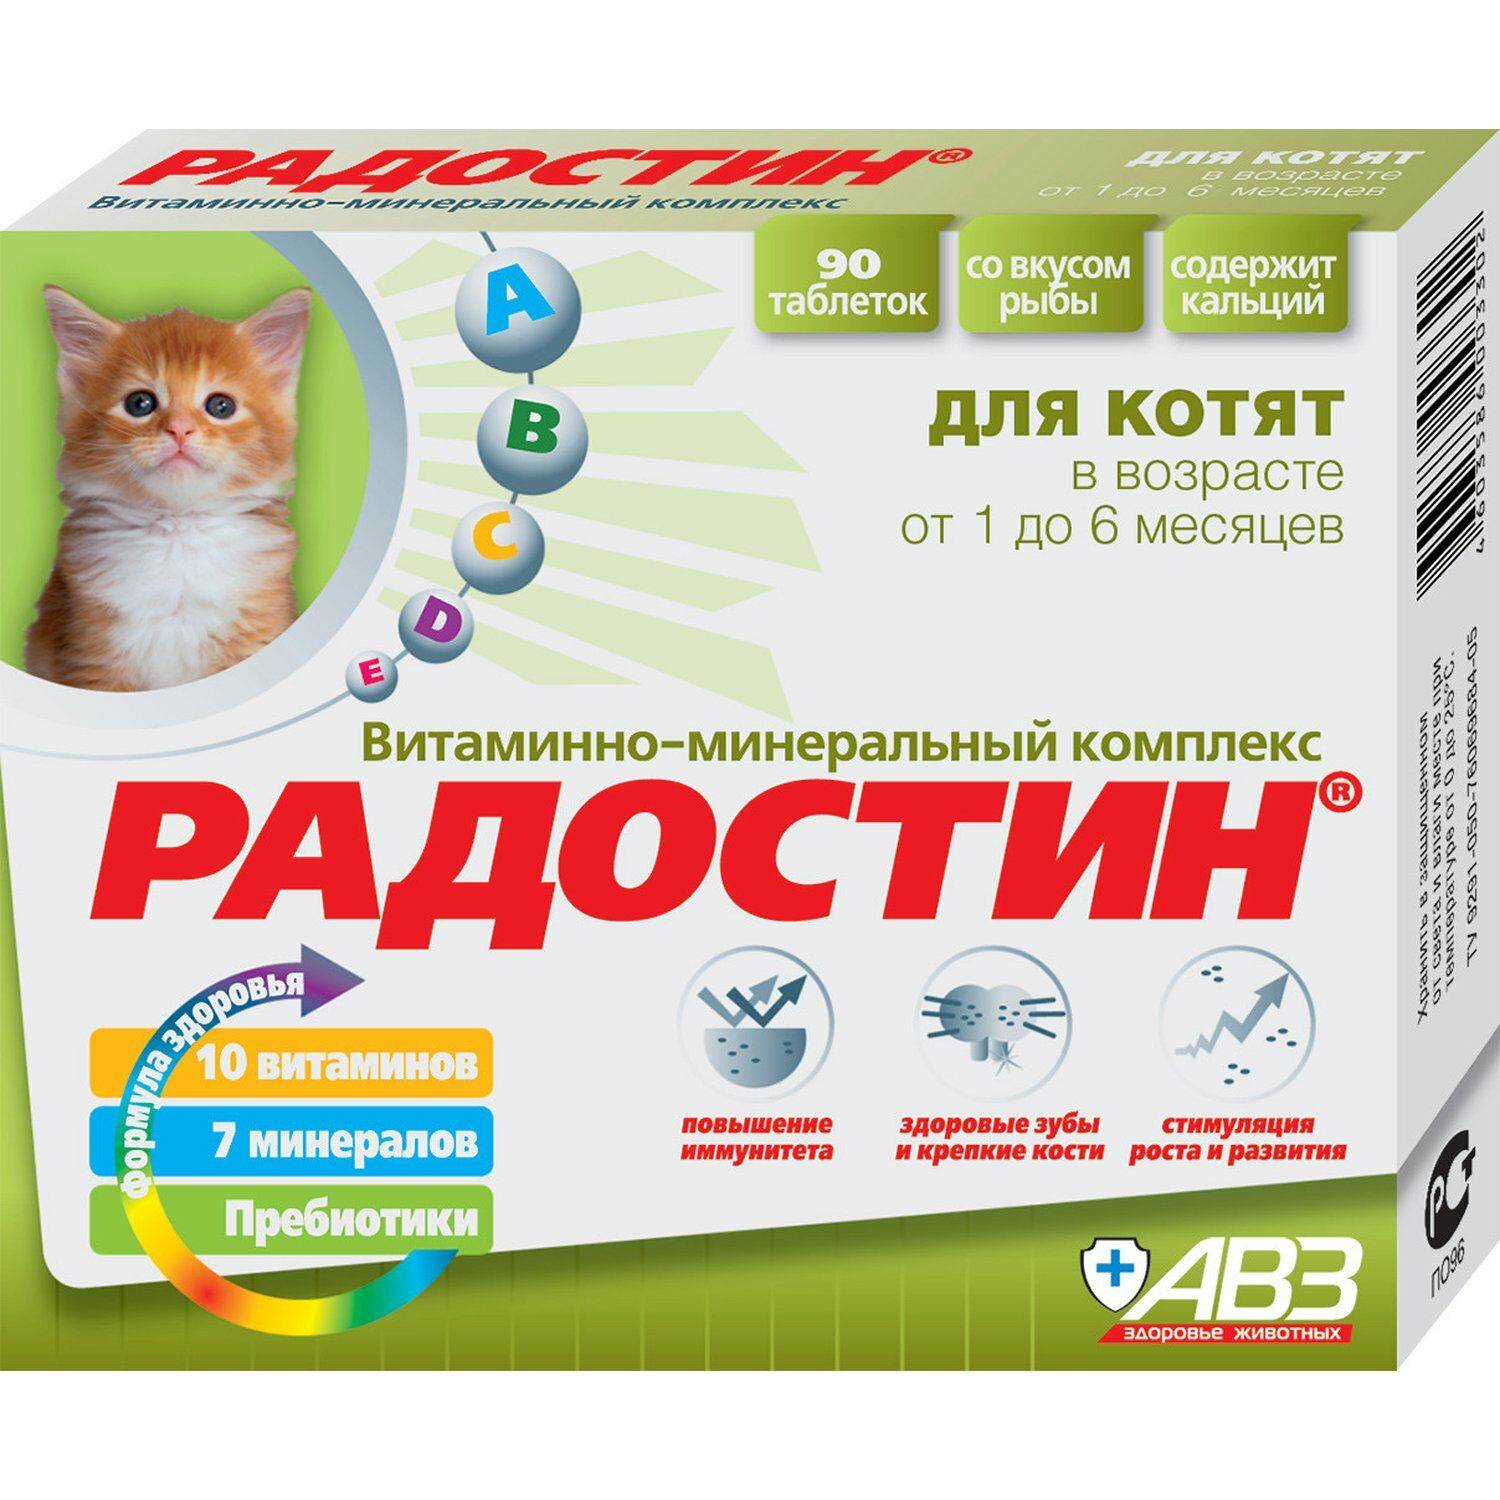 Витамины для кошек с кальцием - виды медикаментов с описанием и дозировкой